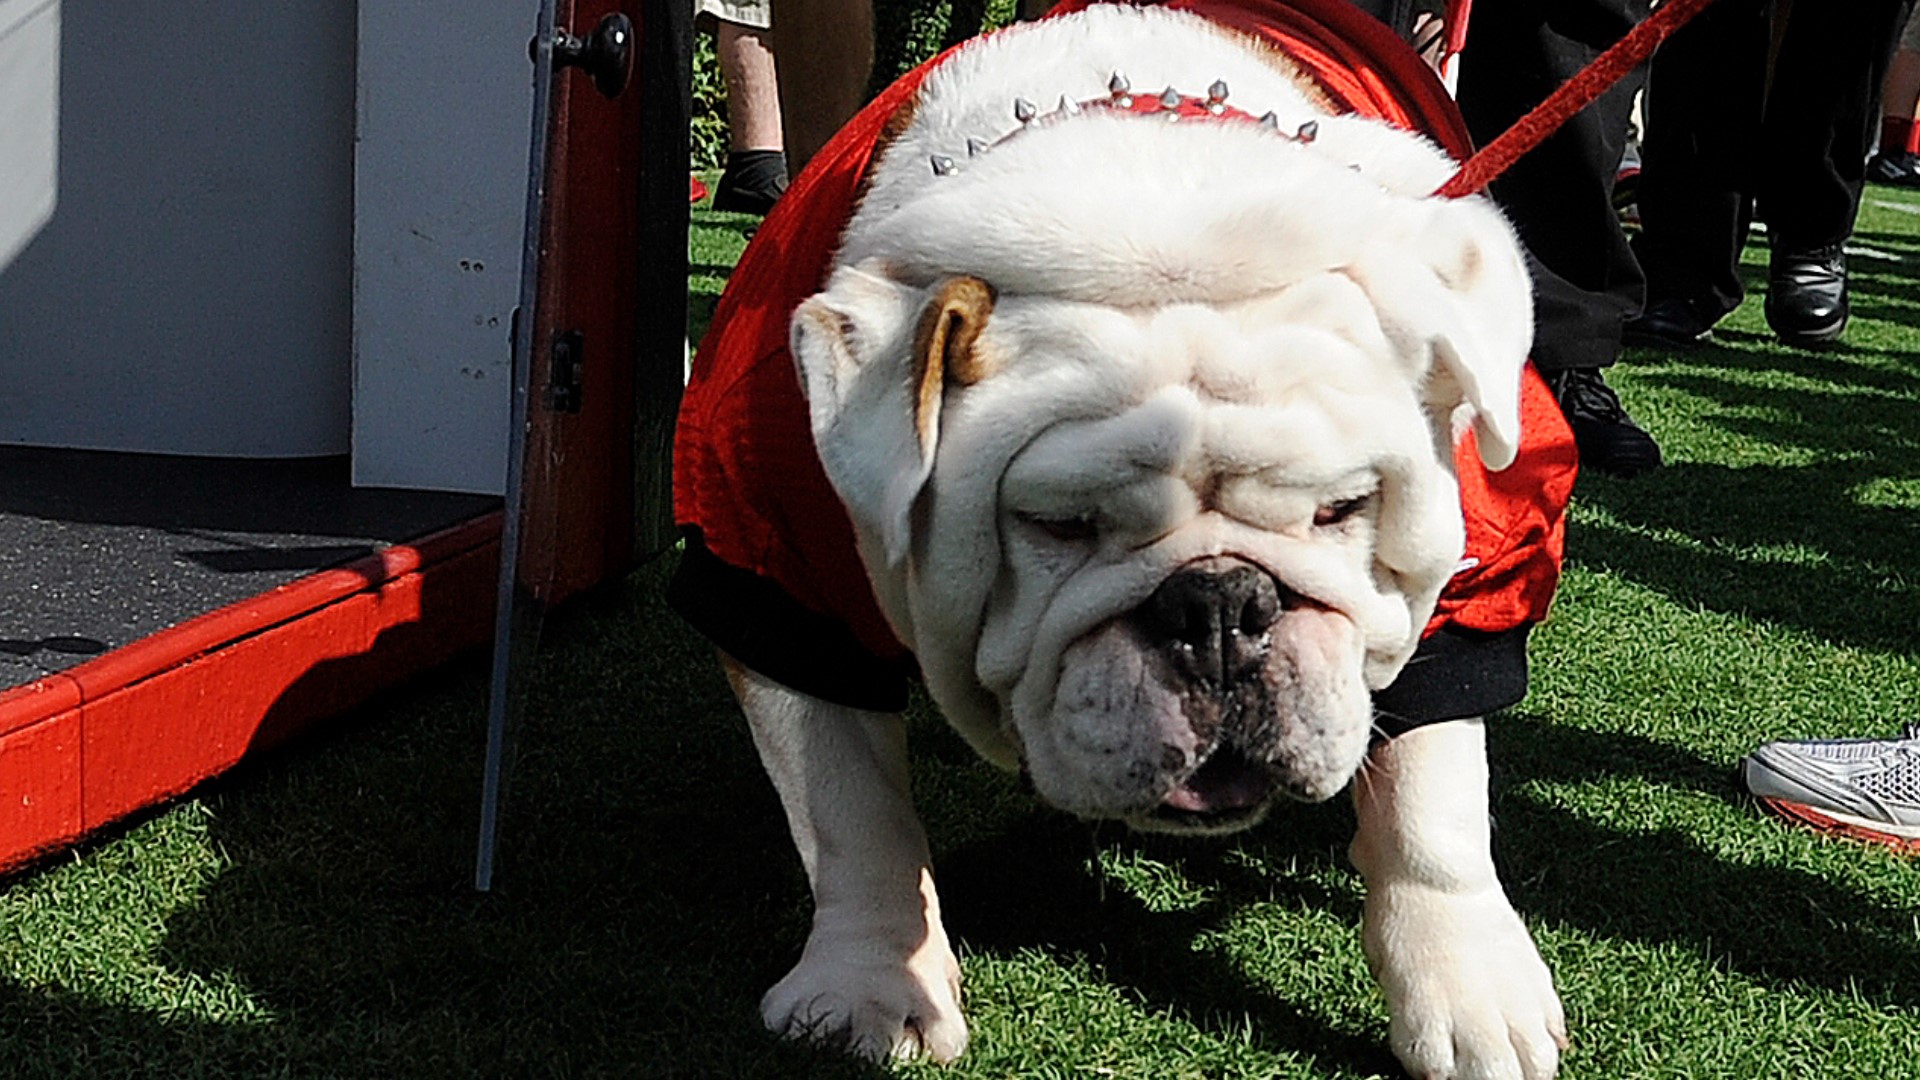 The history behind UGA's Bulldog mascot | 10tv.com